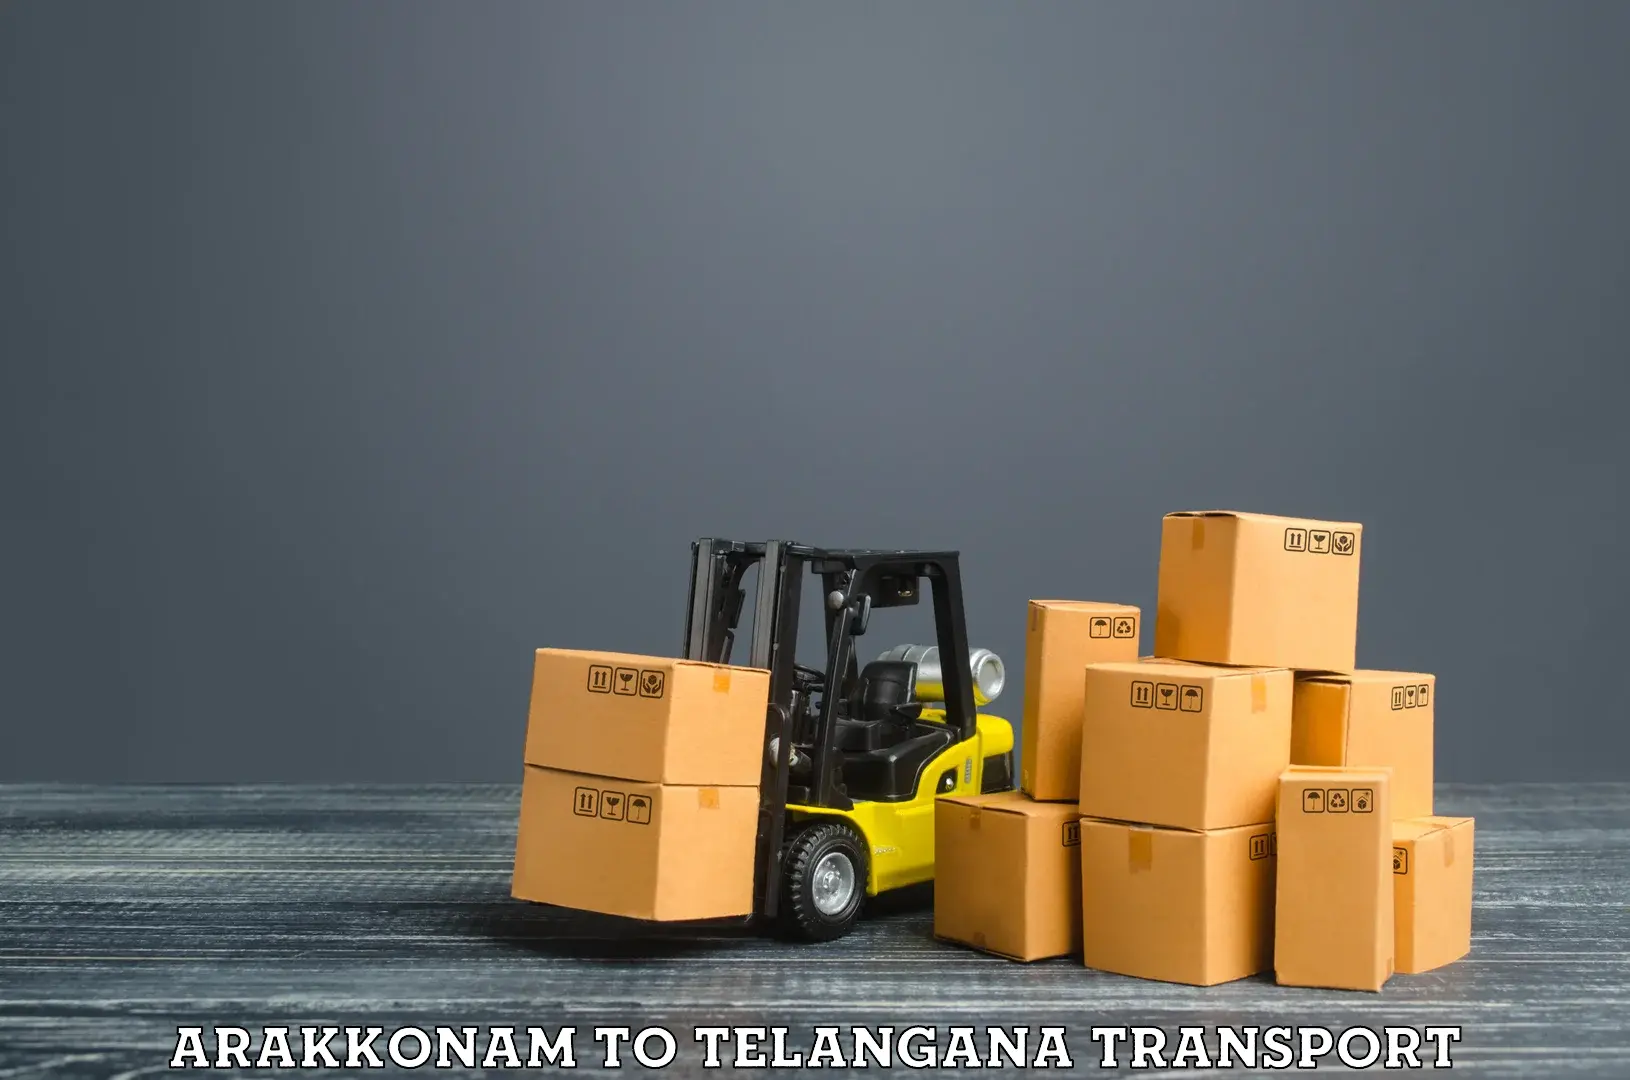 Container transport service Arakkonam to Dubbak